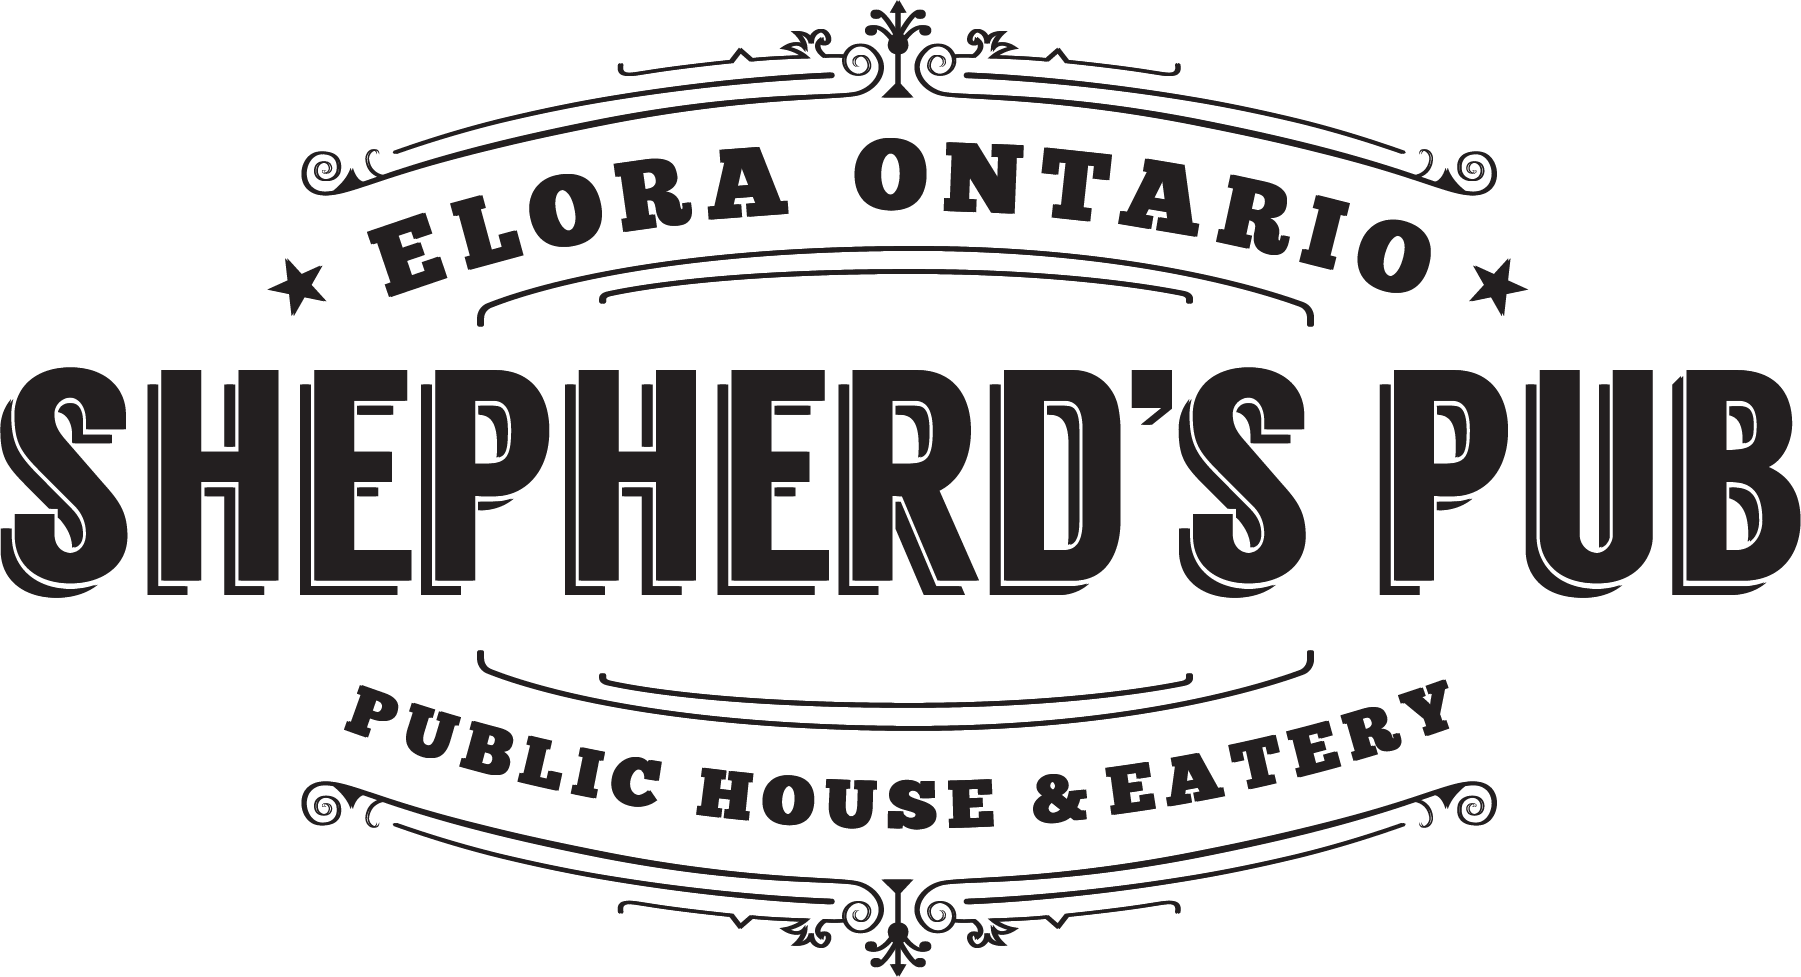 Shepherd's Pub